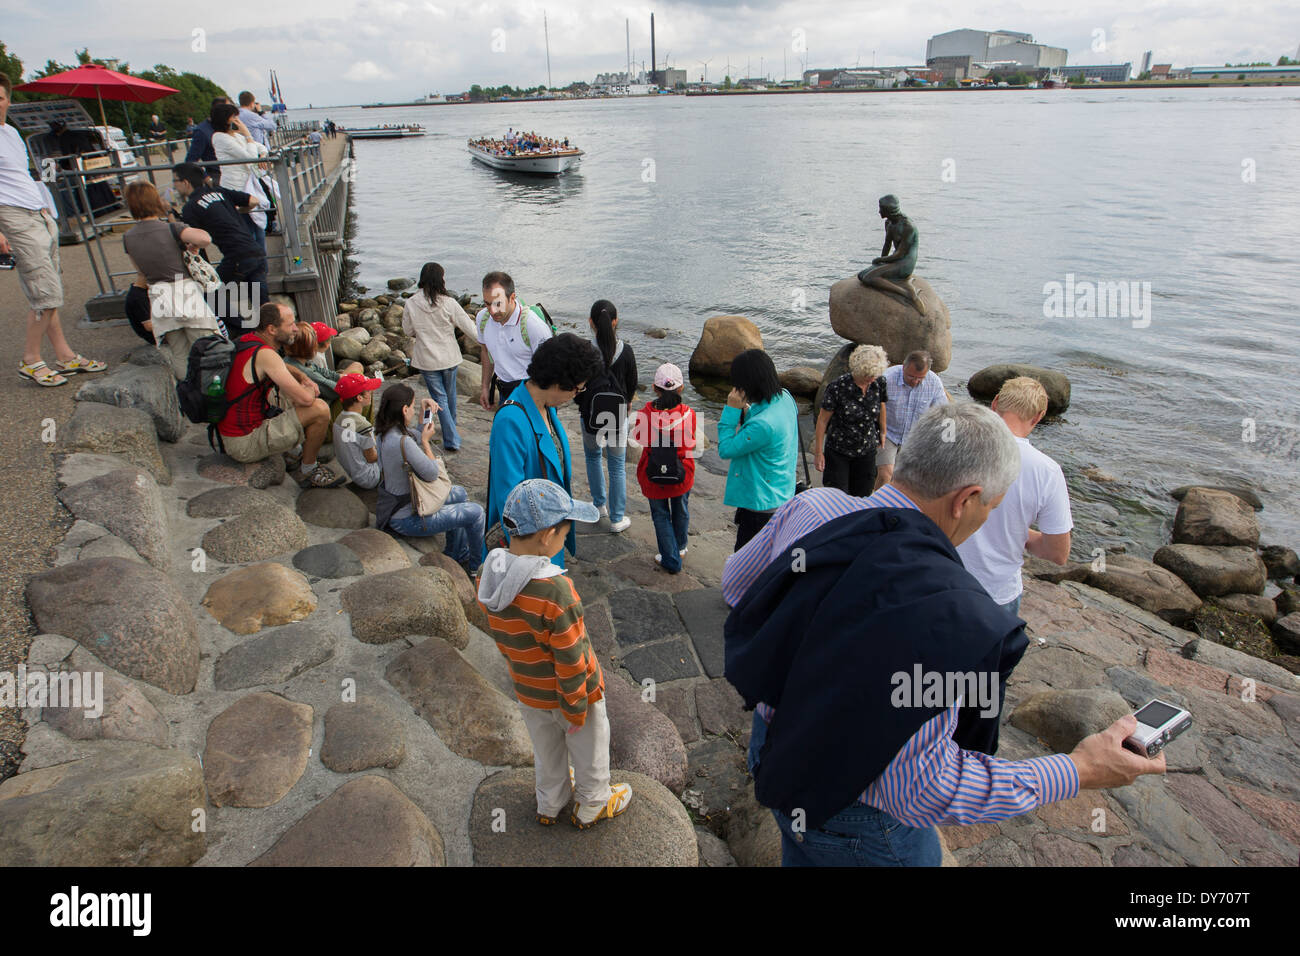 Turistas mirando la atracción turística de Copenhague, la Sirenita, 'Den Lille Havfrue'. Foto de stock